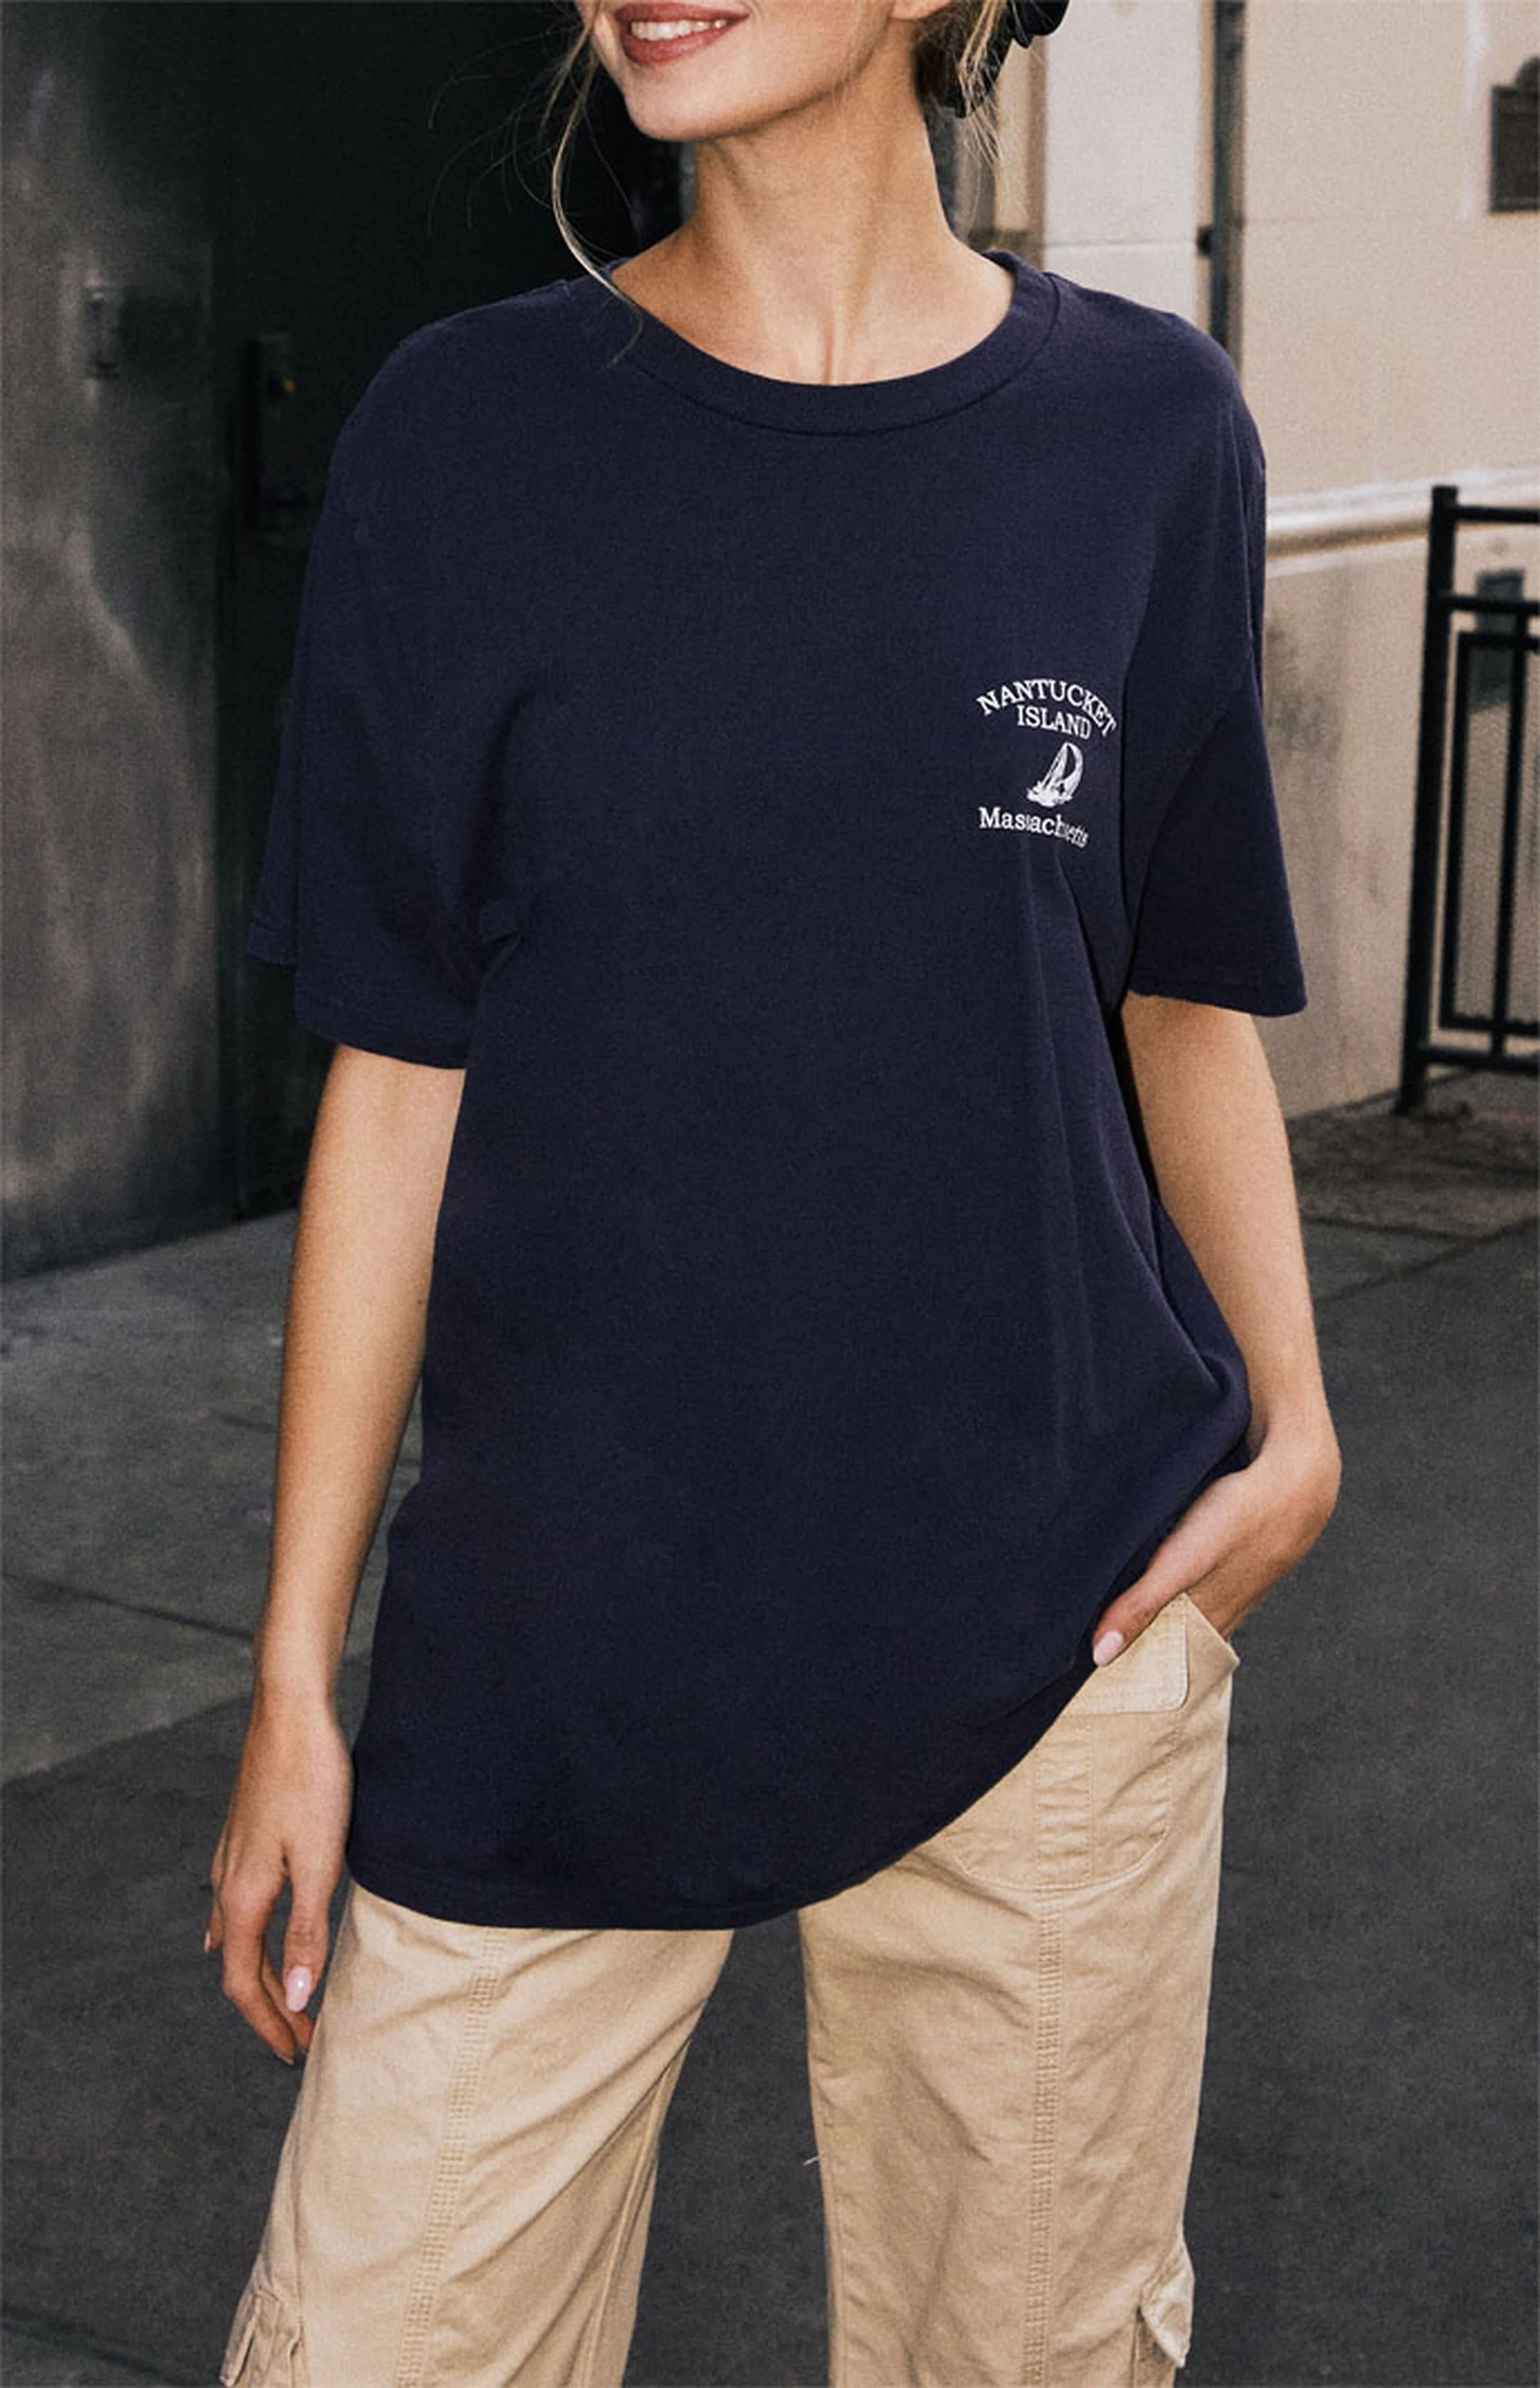 John Galt Nantucket Island T-Shirt | PacSun